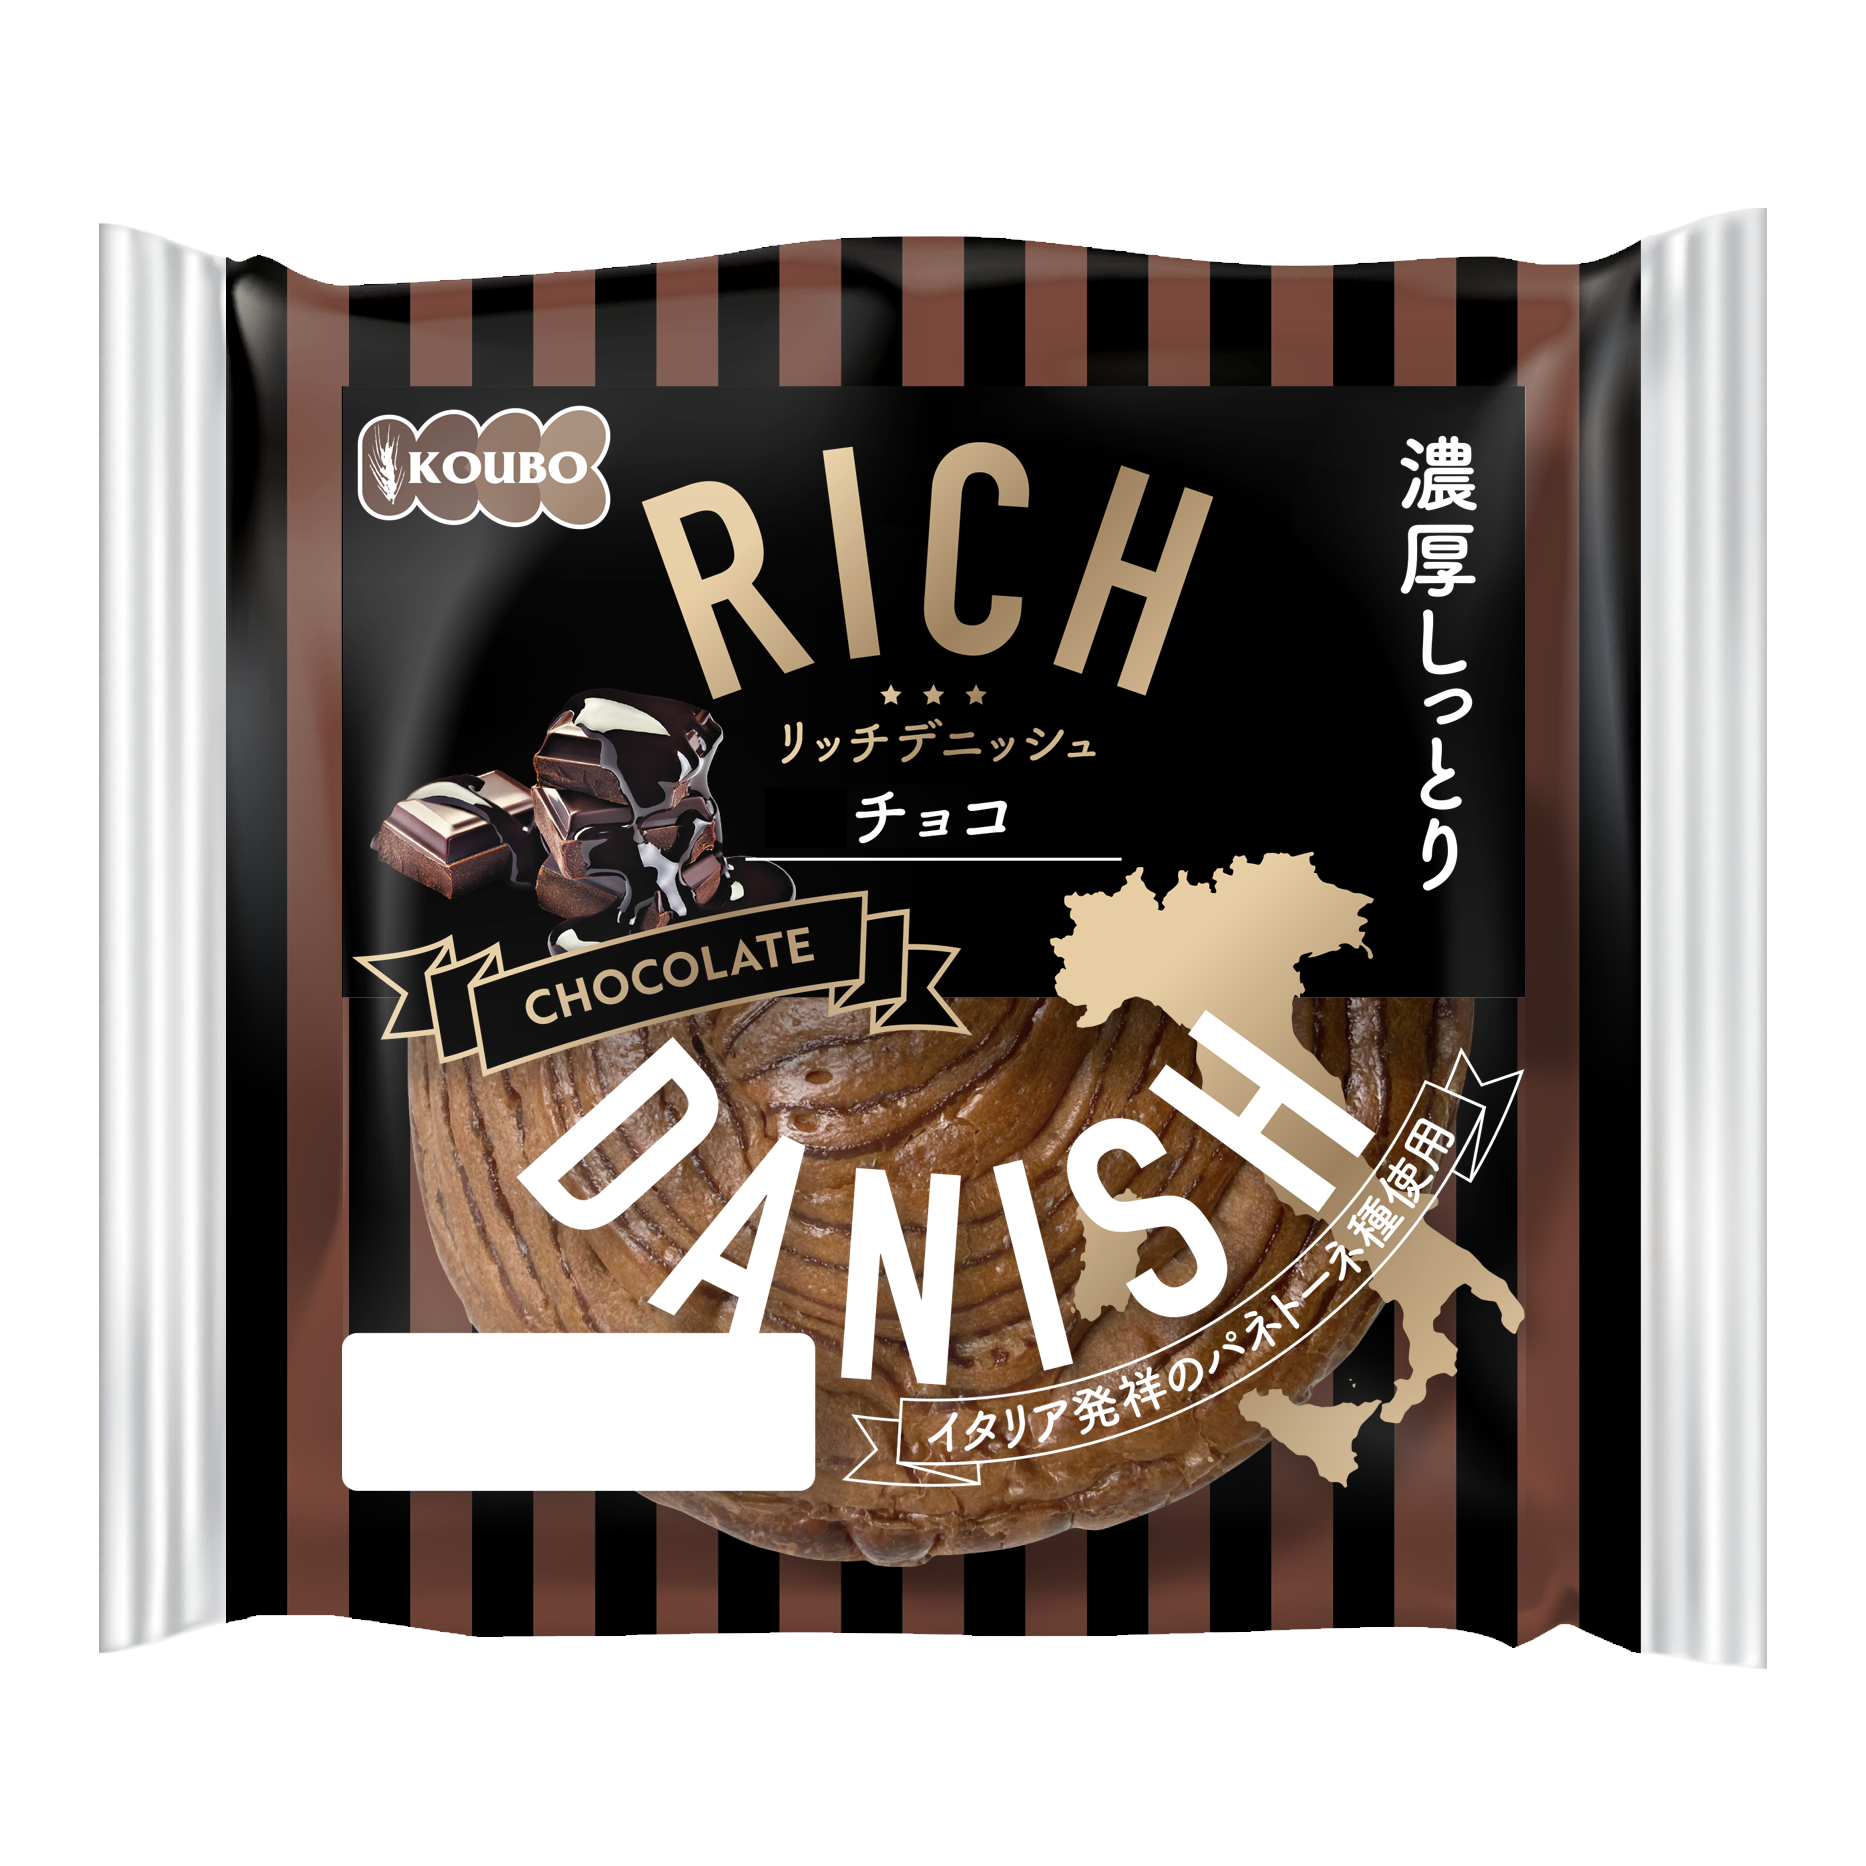 常温で賞味期限90日！濃厚しっとり贅沢な味わいのロングライフパン「リッチデニッシュ」全3種が新発売。これ...